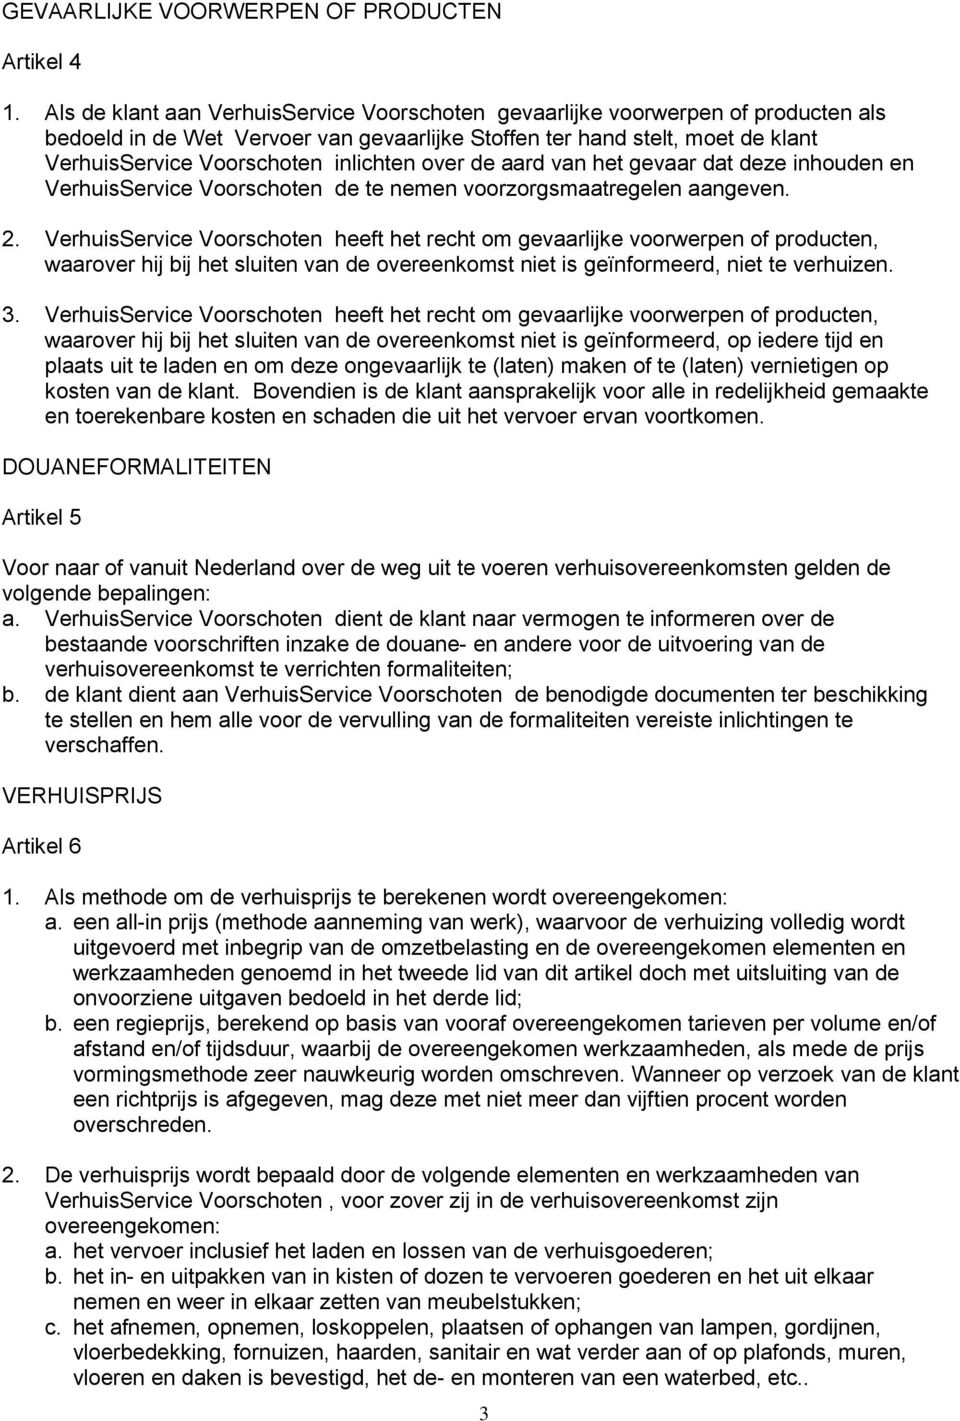 inlichten over de aard van het gevaar dat deze inhouden en VerhuisService Voorschoten de te nemen voorzorgsmaatregelen aangeven. 2.